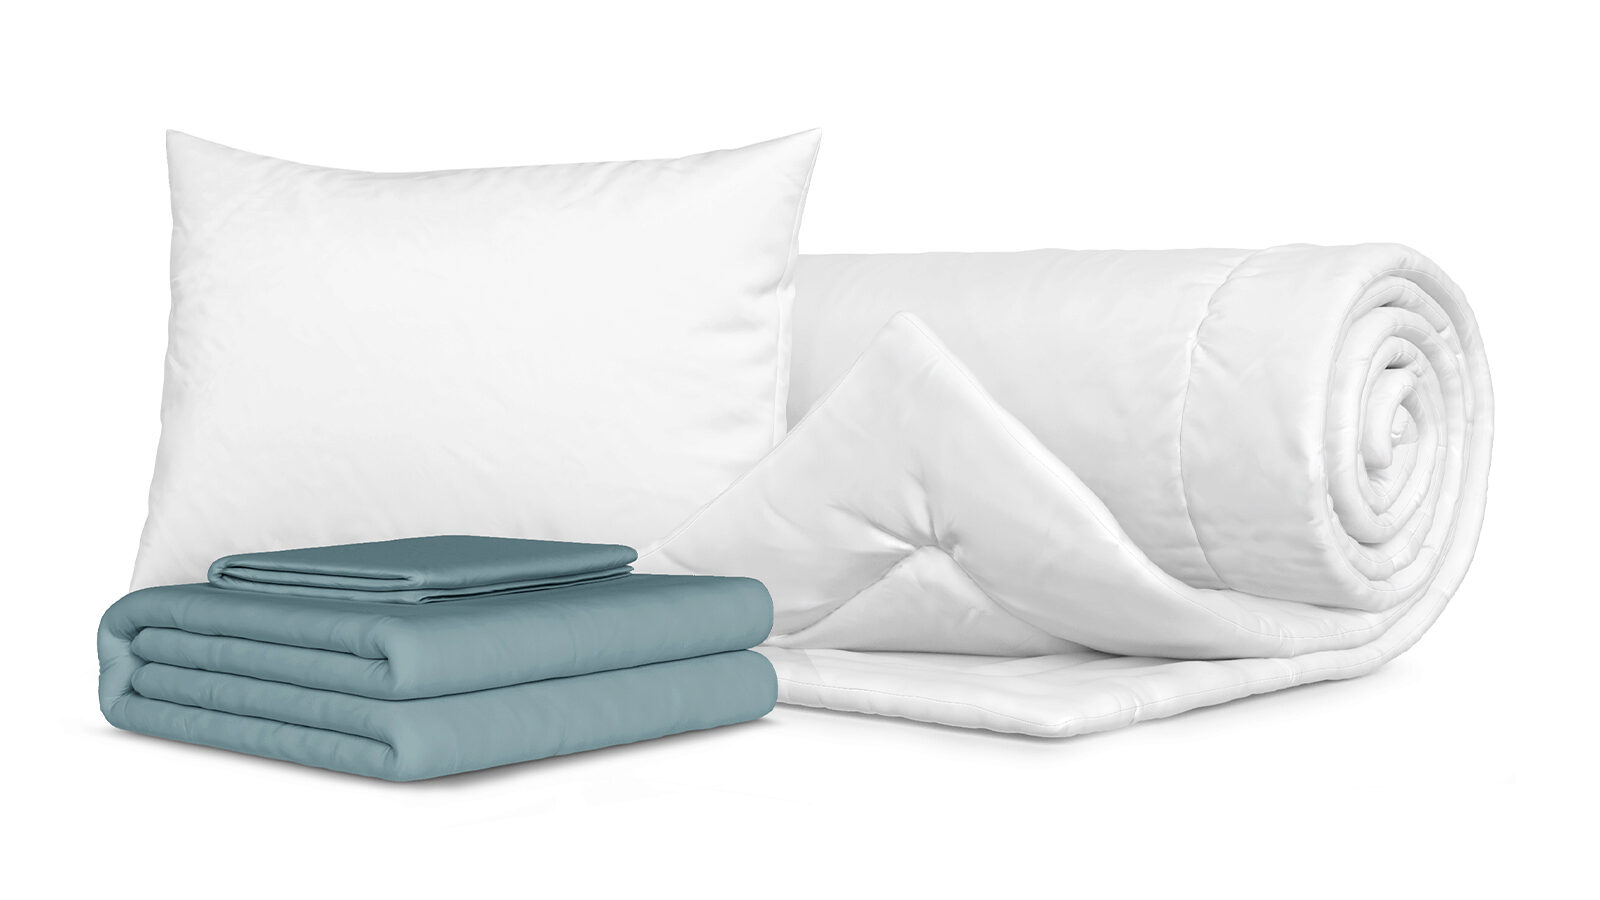 Комплект Одеяло Beat + Подушка Sky + Комплект постельного белья Comfort Cotton, цвет: Серо-голубой арчибалд джозеф кронин комплект из 5 книг